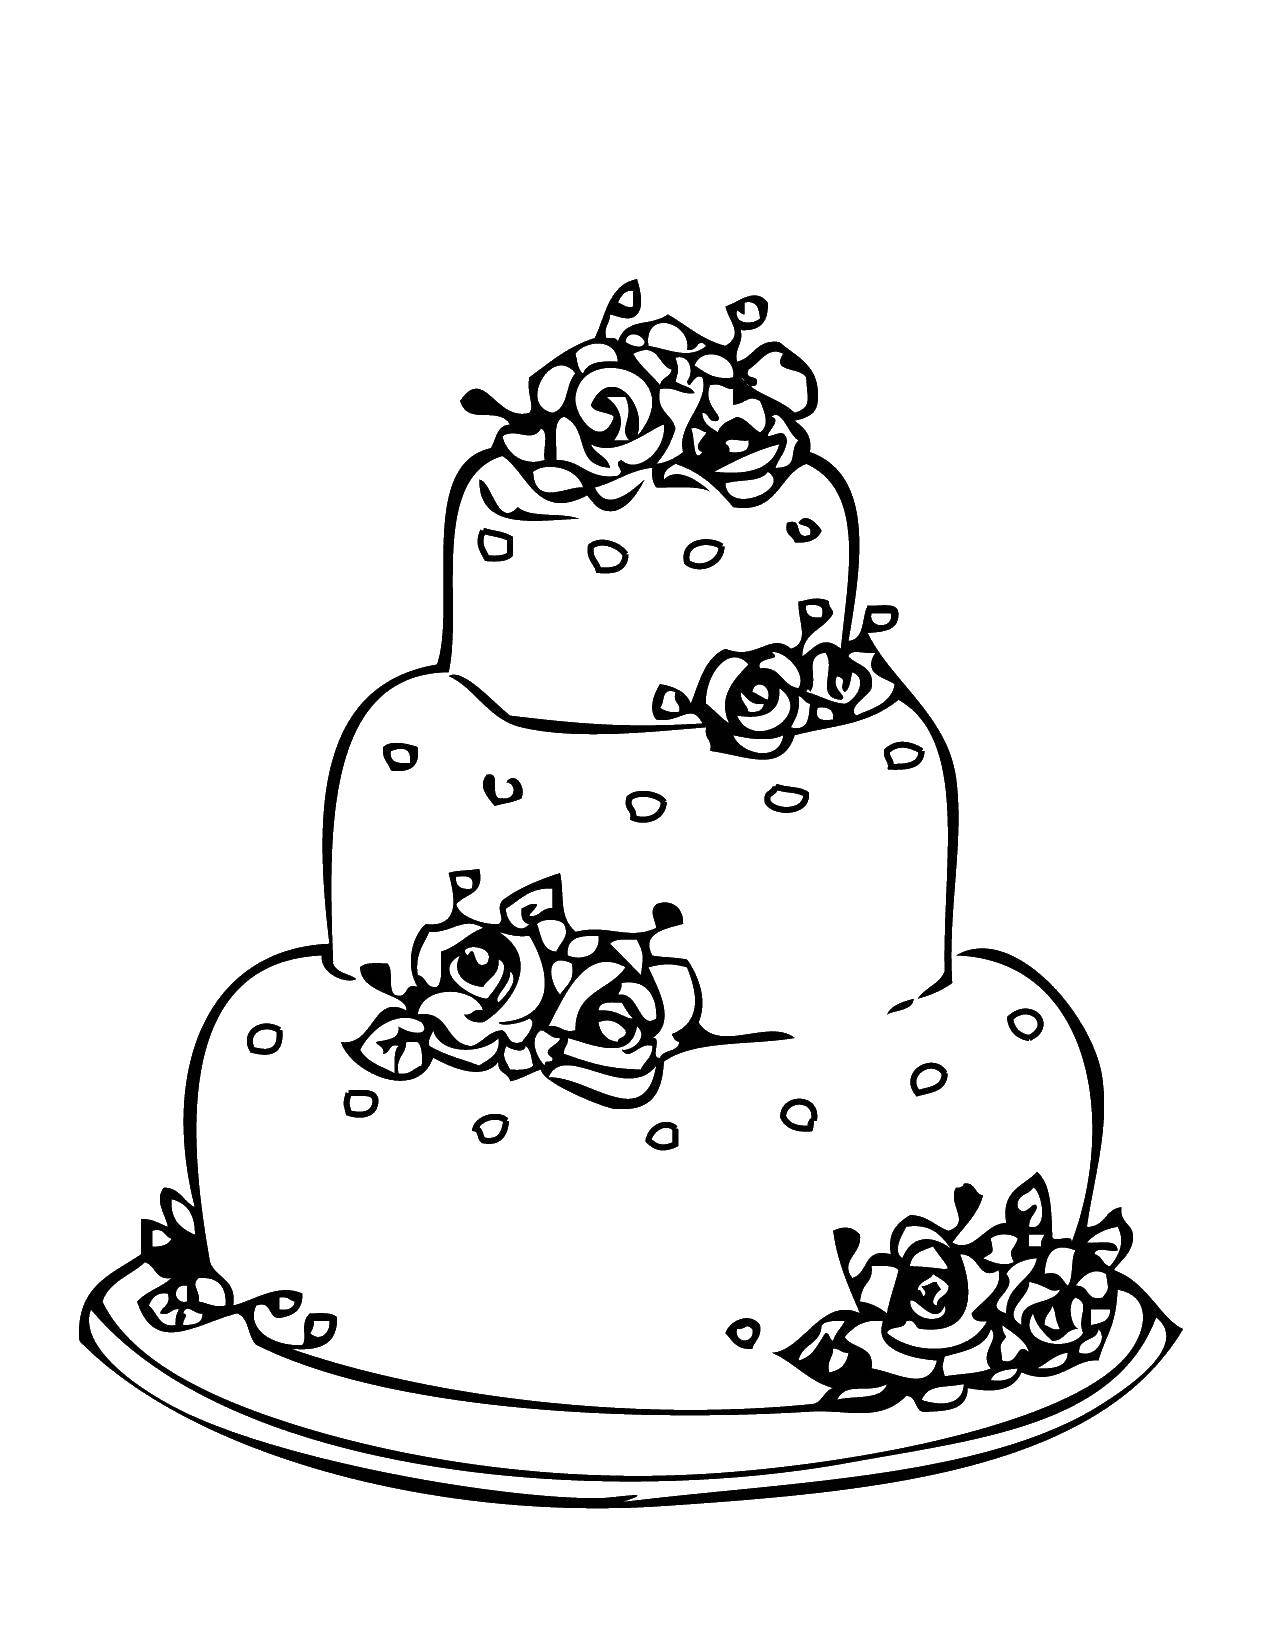 Название: Раскраска Свадебный тортик с розами. Категория: торты. Теги: торты, сладости, розы.